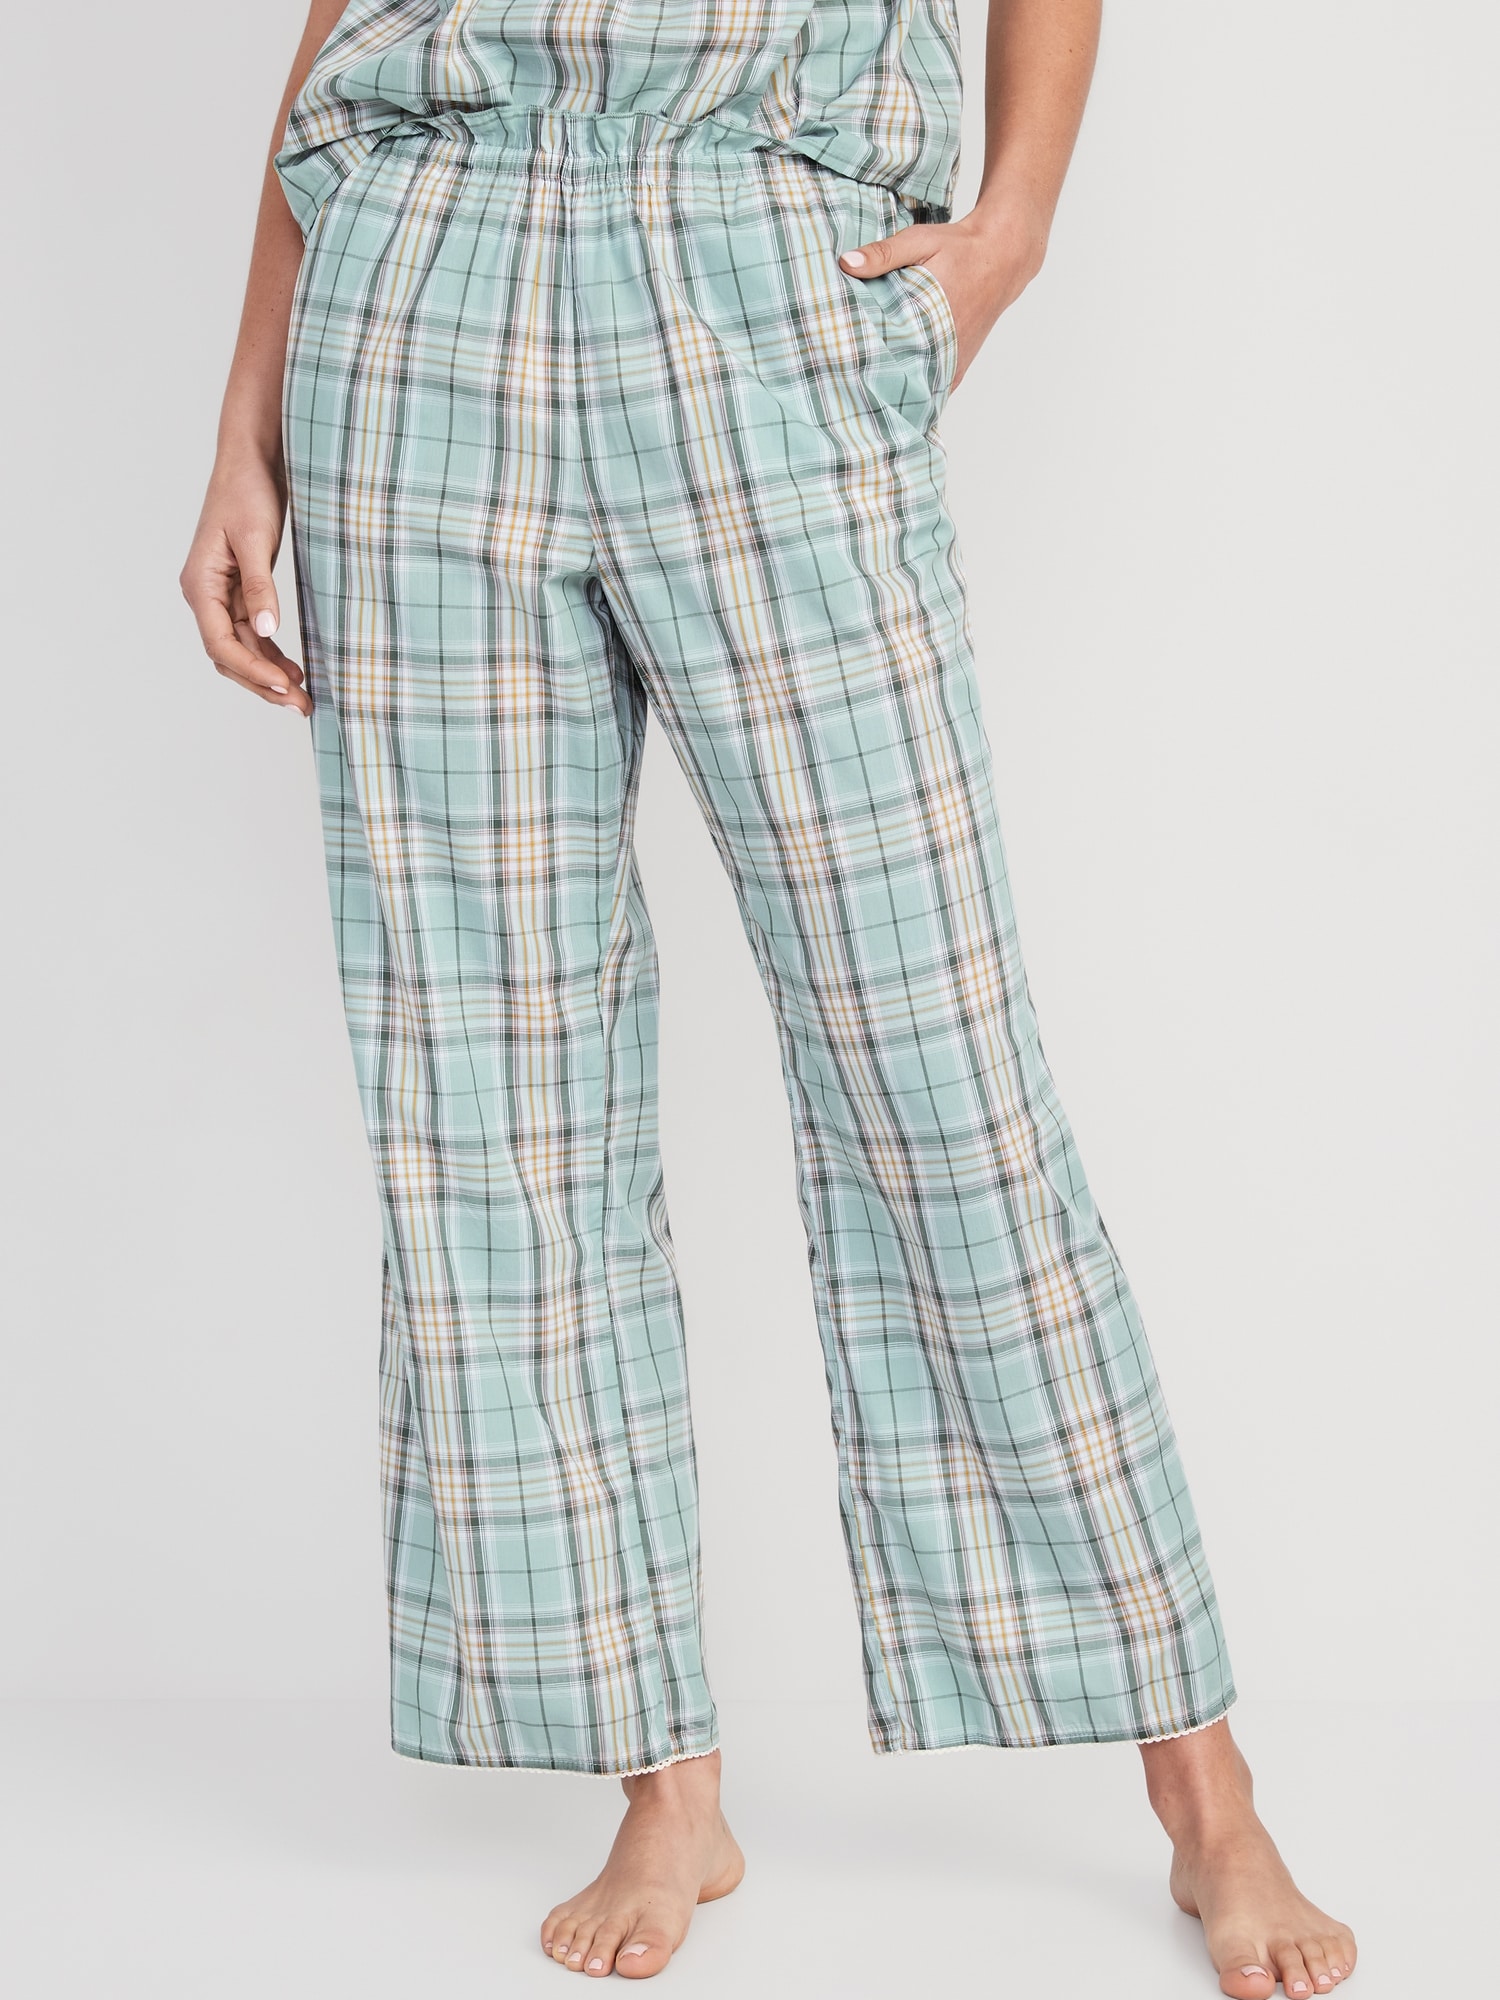 Pajama Pants - Dark blue/white plaid - Ladies